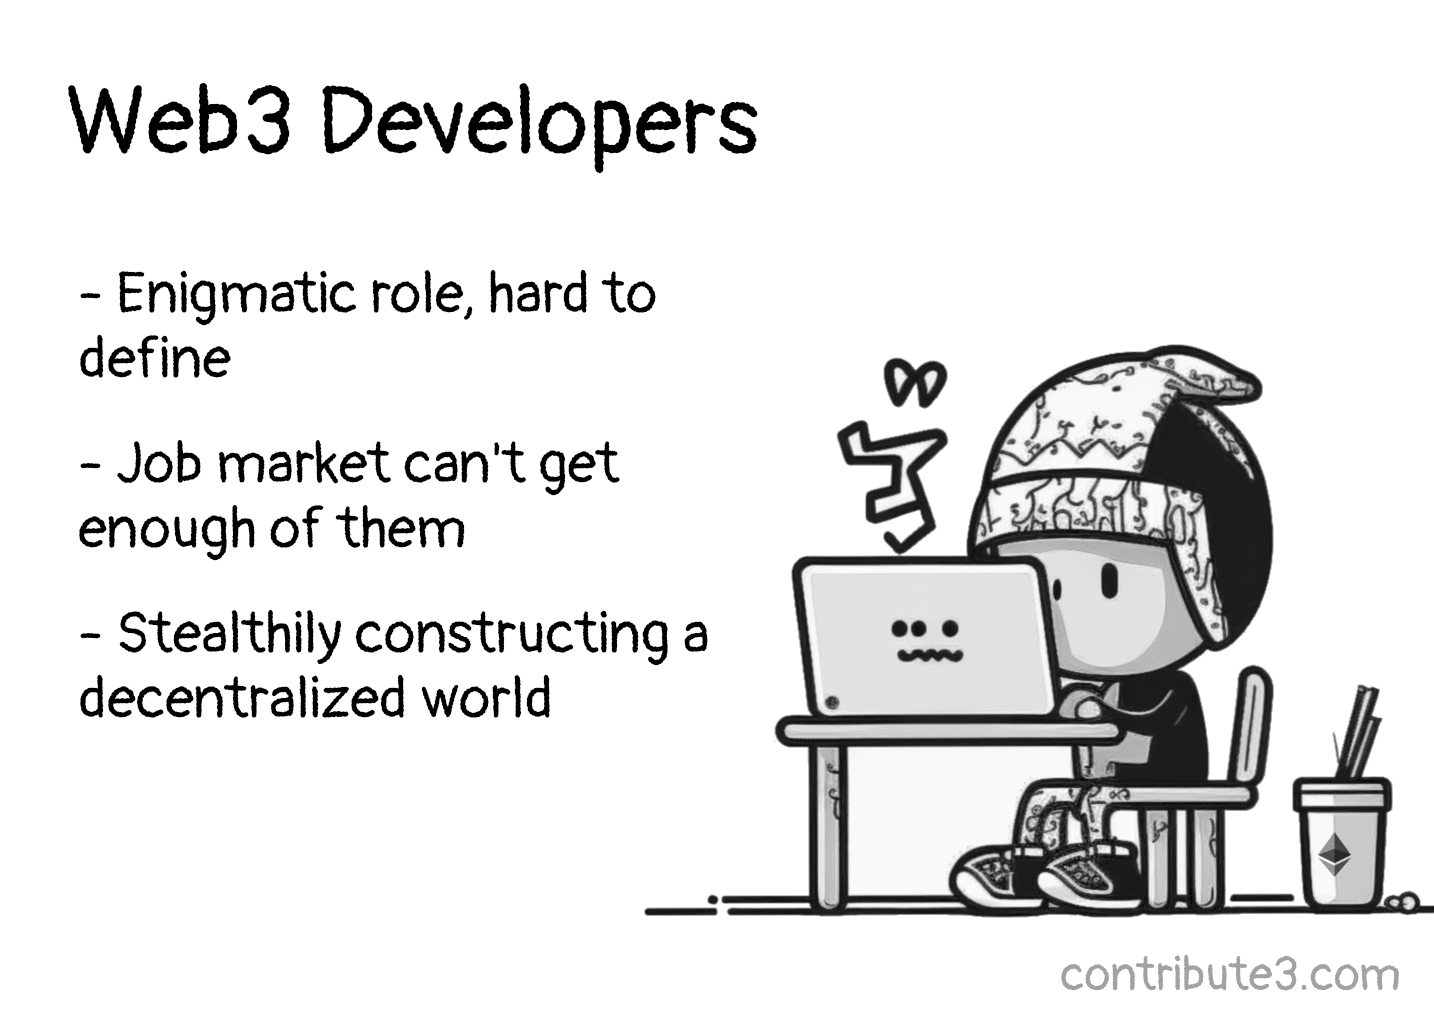 Web3 Developer — Enigmatic role, hard to define. Source: contribute3.com